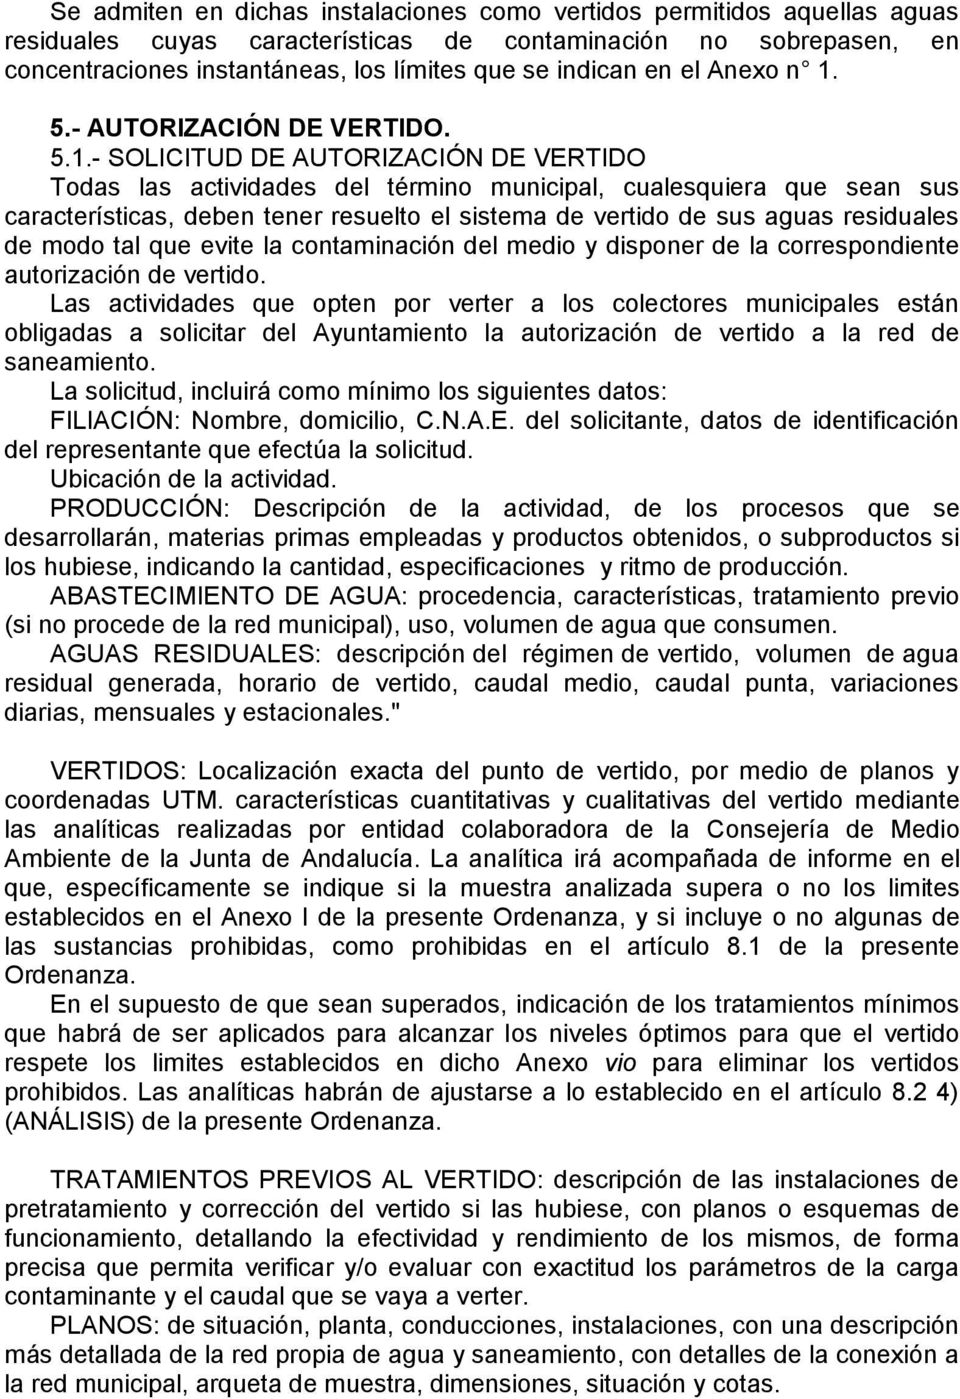 5.- AUTORIZACIÓN DE VERTIDO. 5.1.